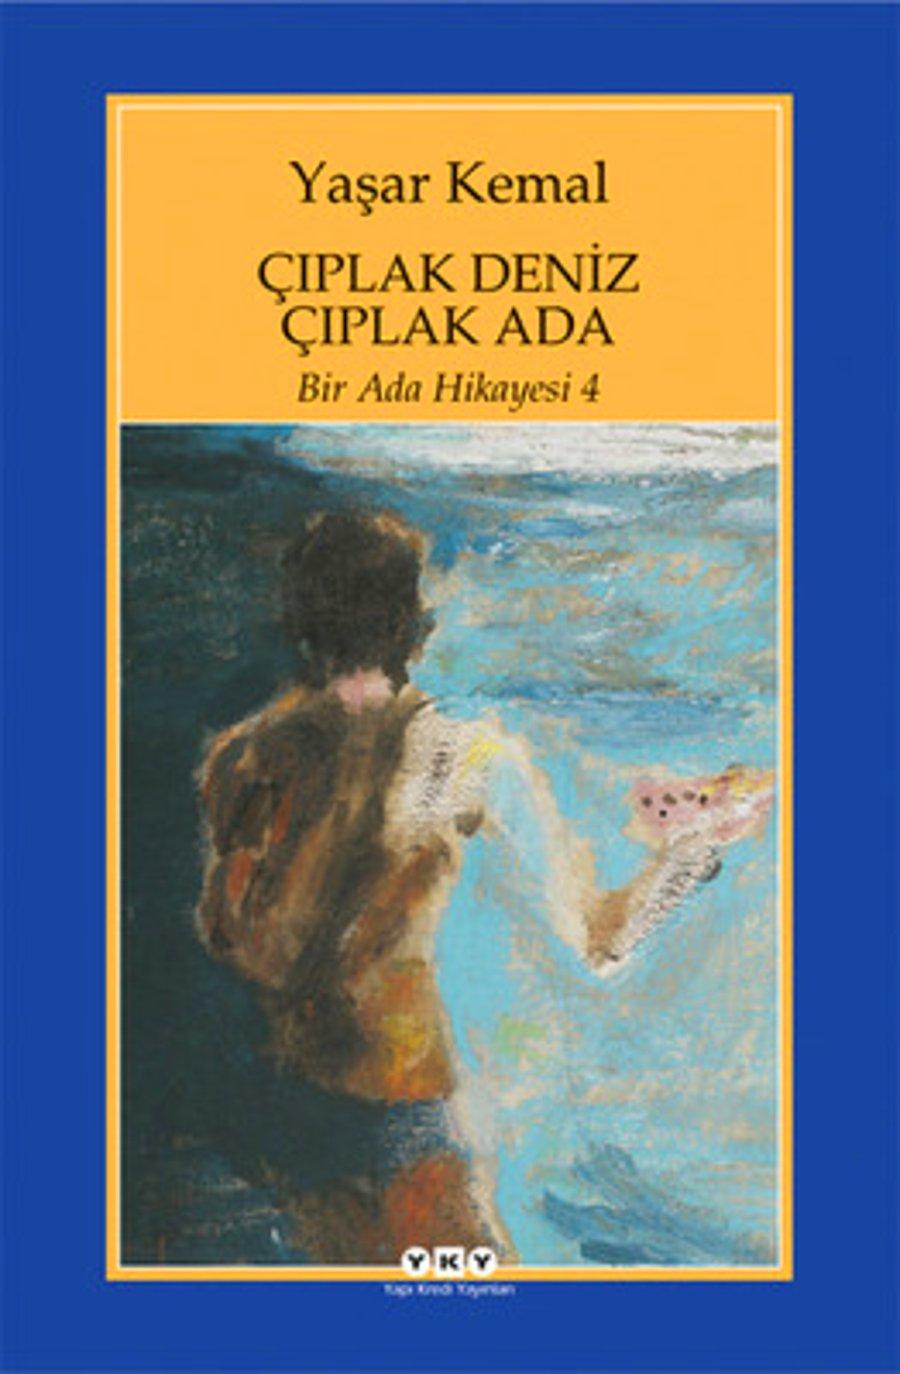 Turk Edebiyatinin Dev Ismi Yasar Kemal In Mutlaka Okumaniz Gereken 19 Kitabi